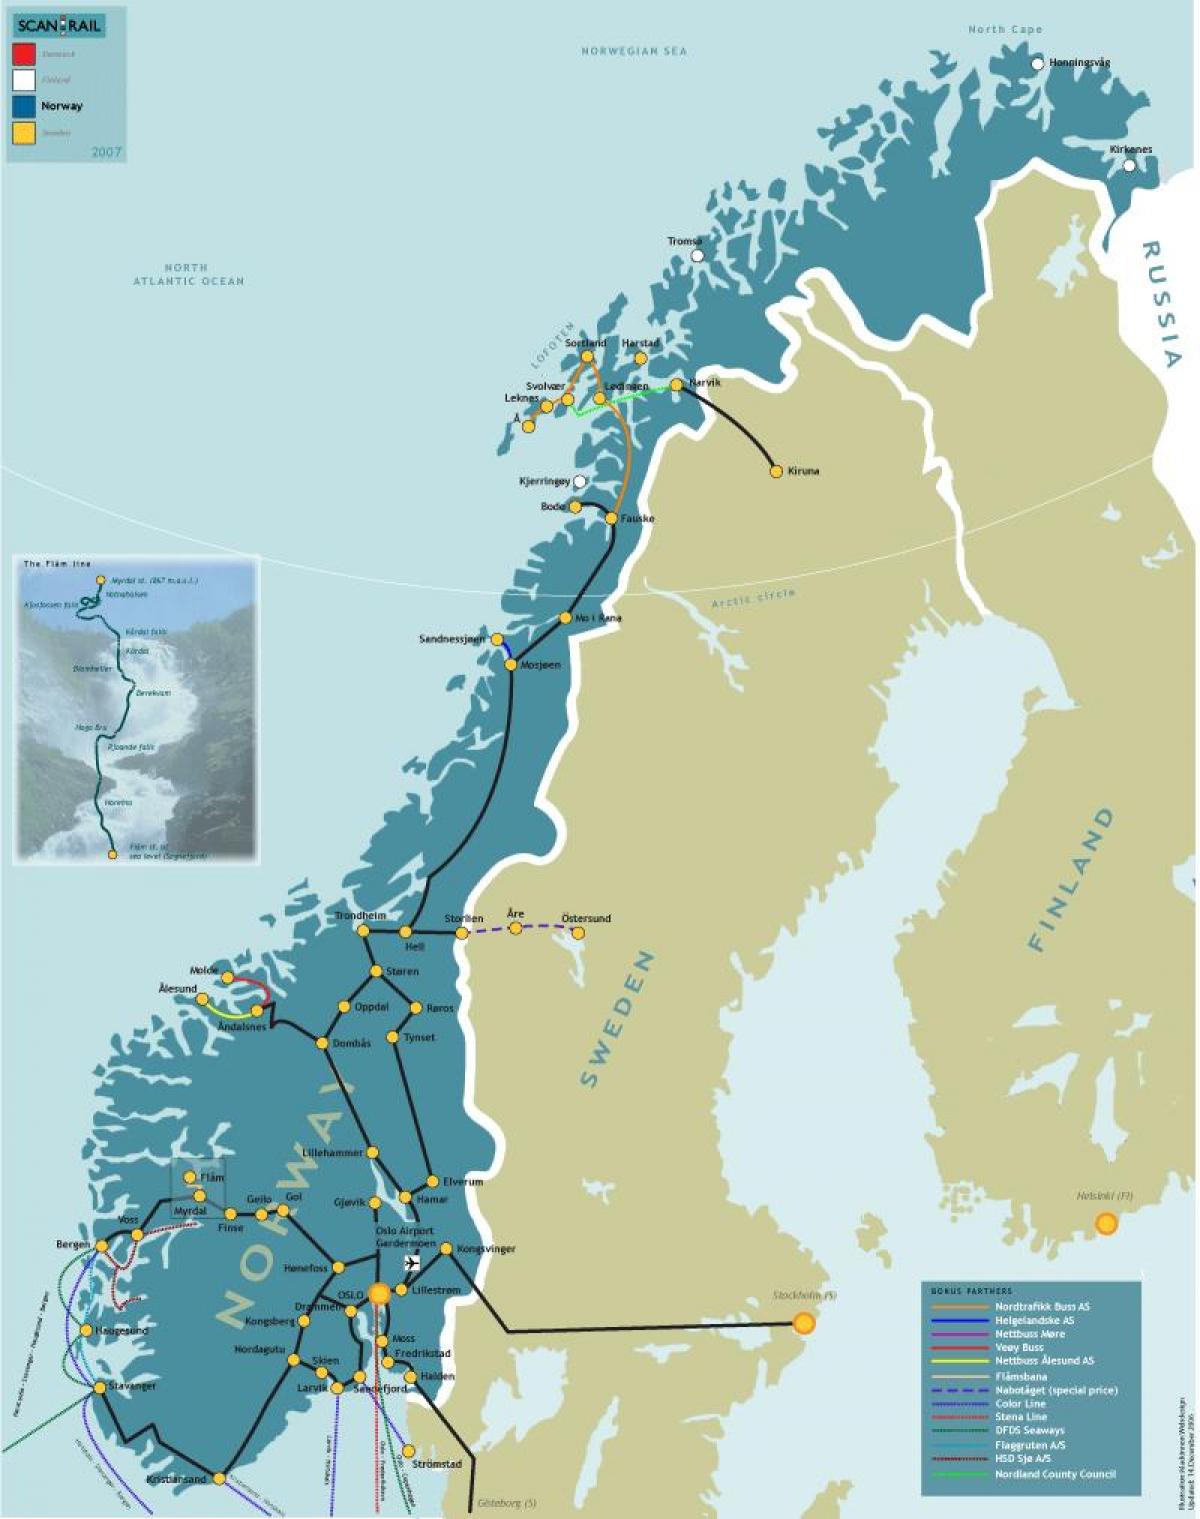 Noruega ferroviario mapa